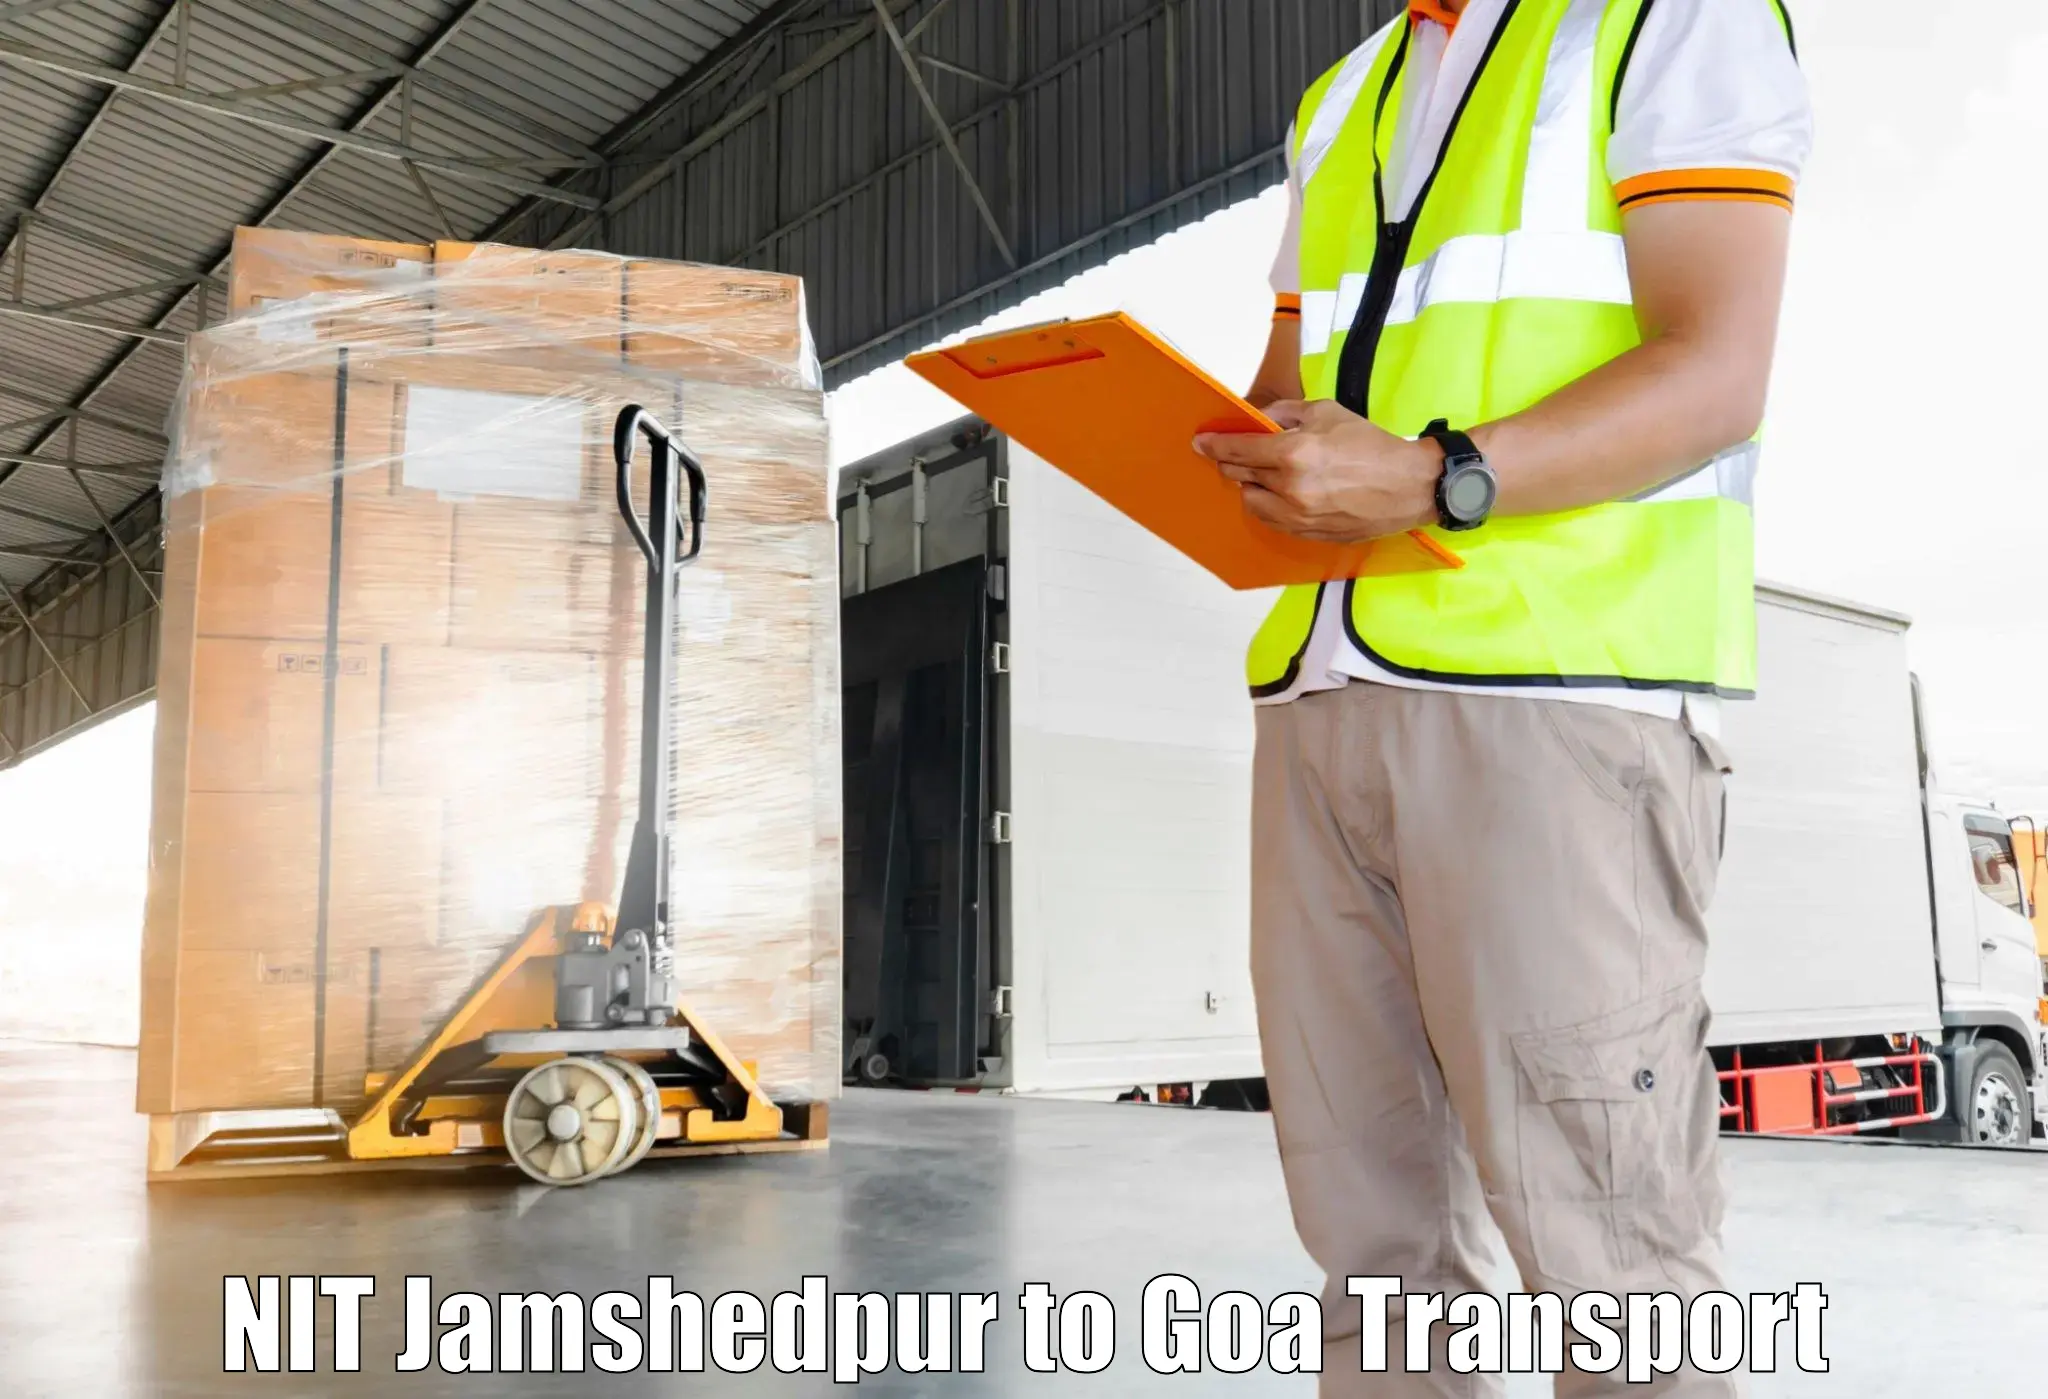 Goods transport services in NIT Jamshedpur to Mormugao Port